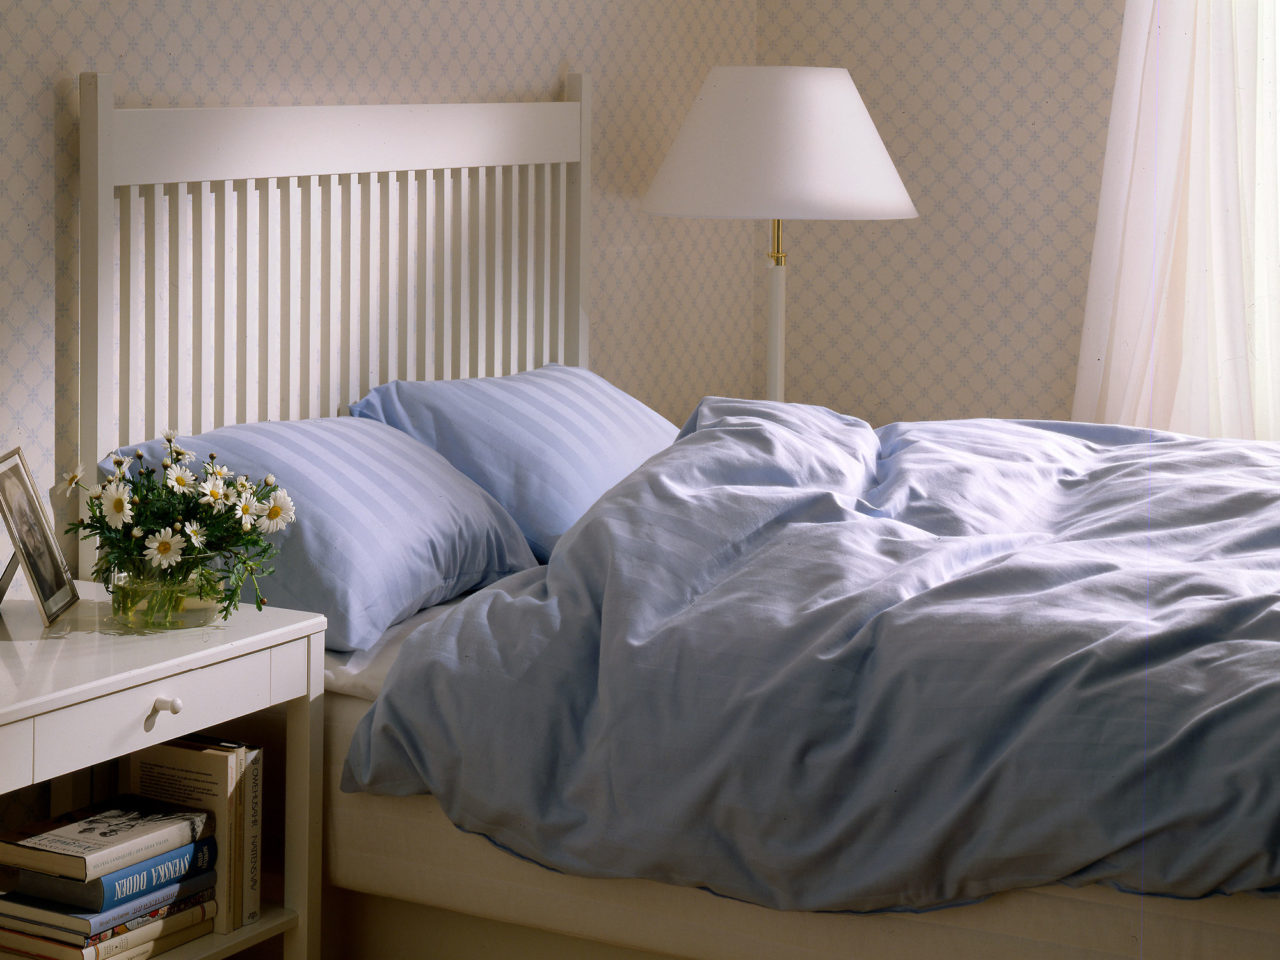 Ett sovrum med möbler och detaljer i vita nyanser. Dubbelsängen, modell STOCKHOLM, har hög gavel och ljusblå sängkläder.